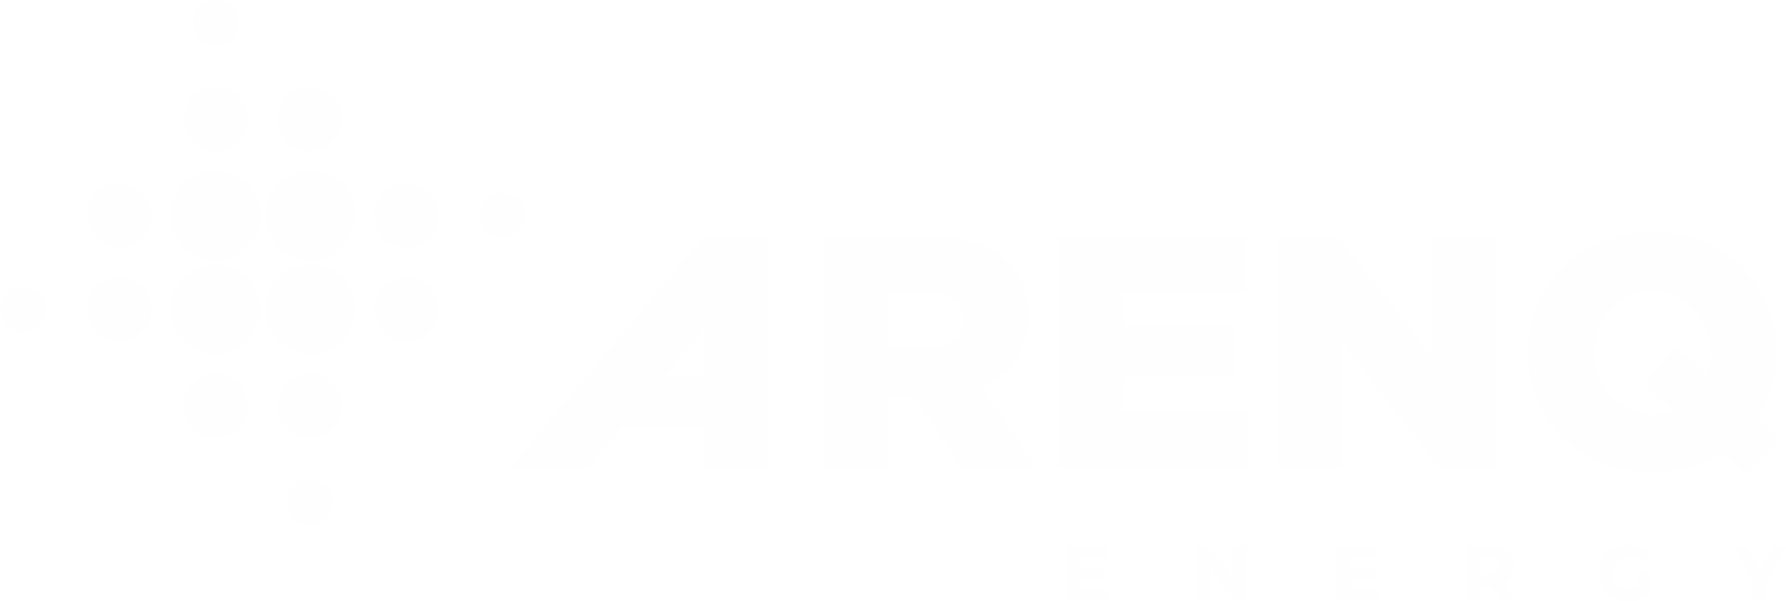 Case Study 02 - Arenq Energy